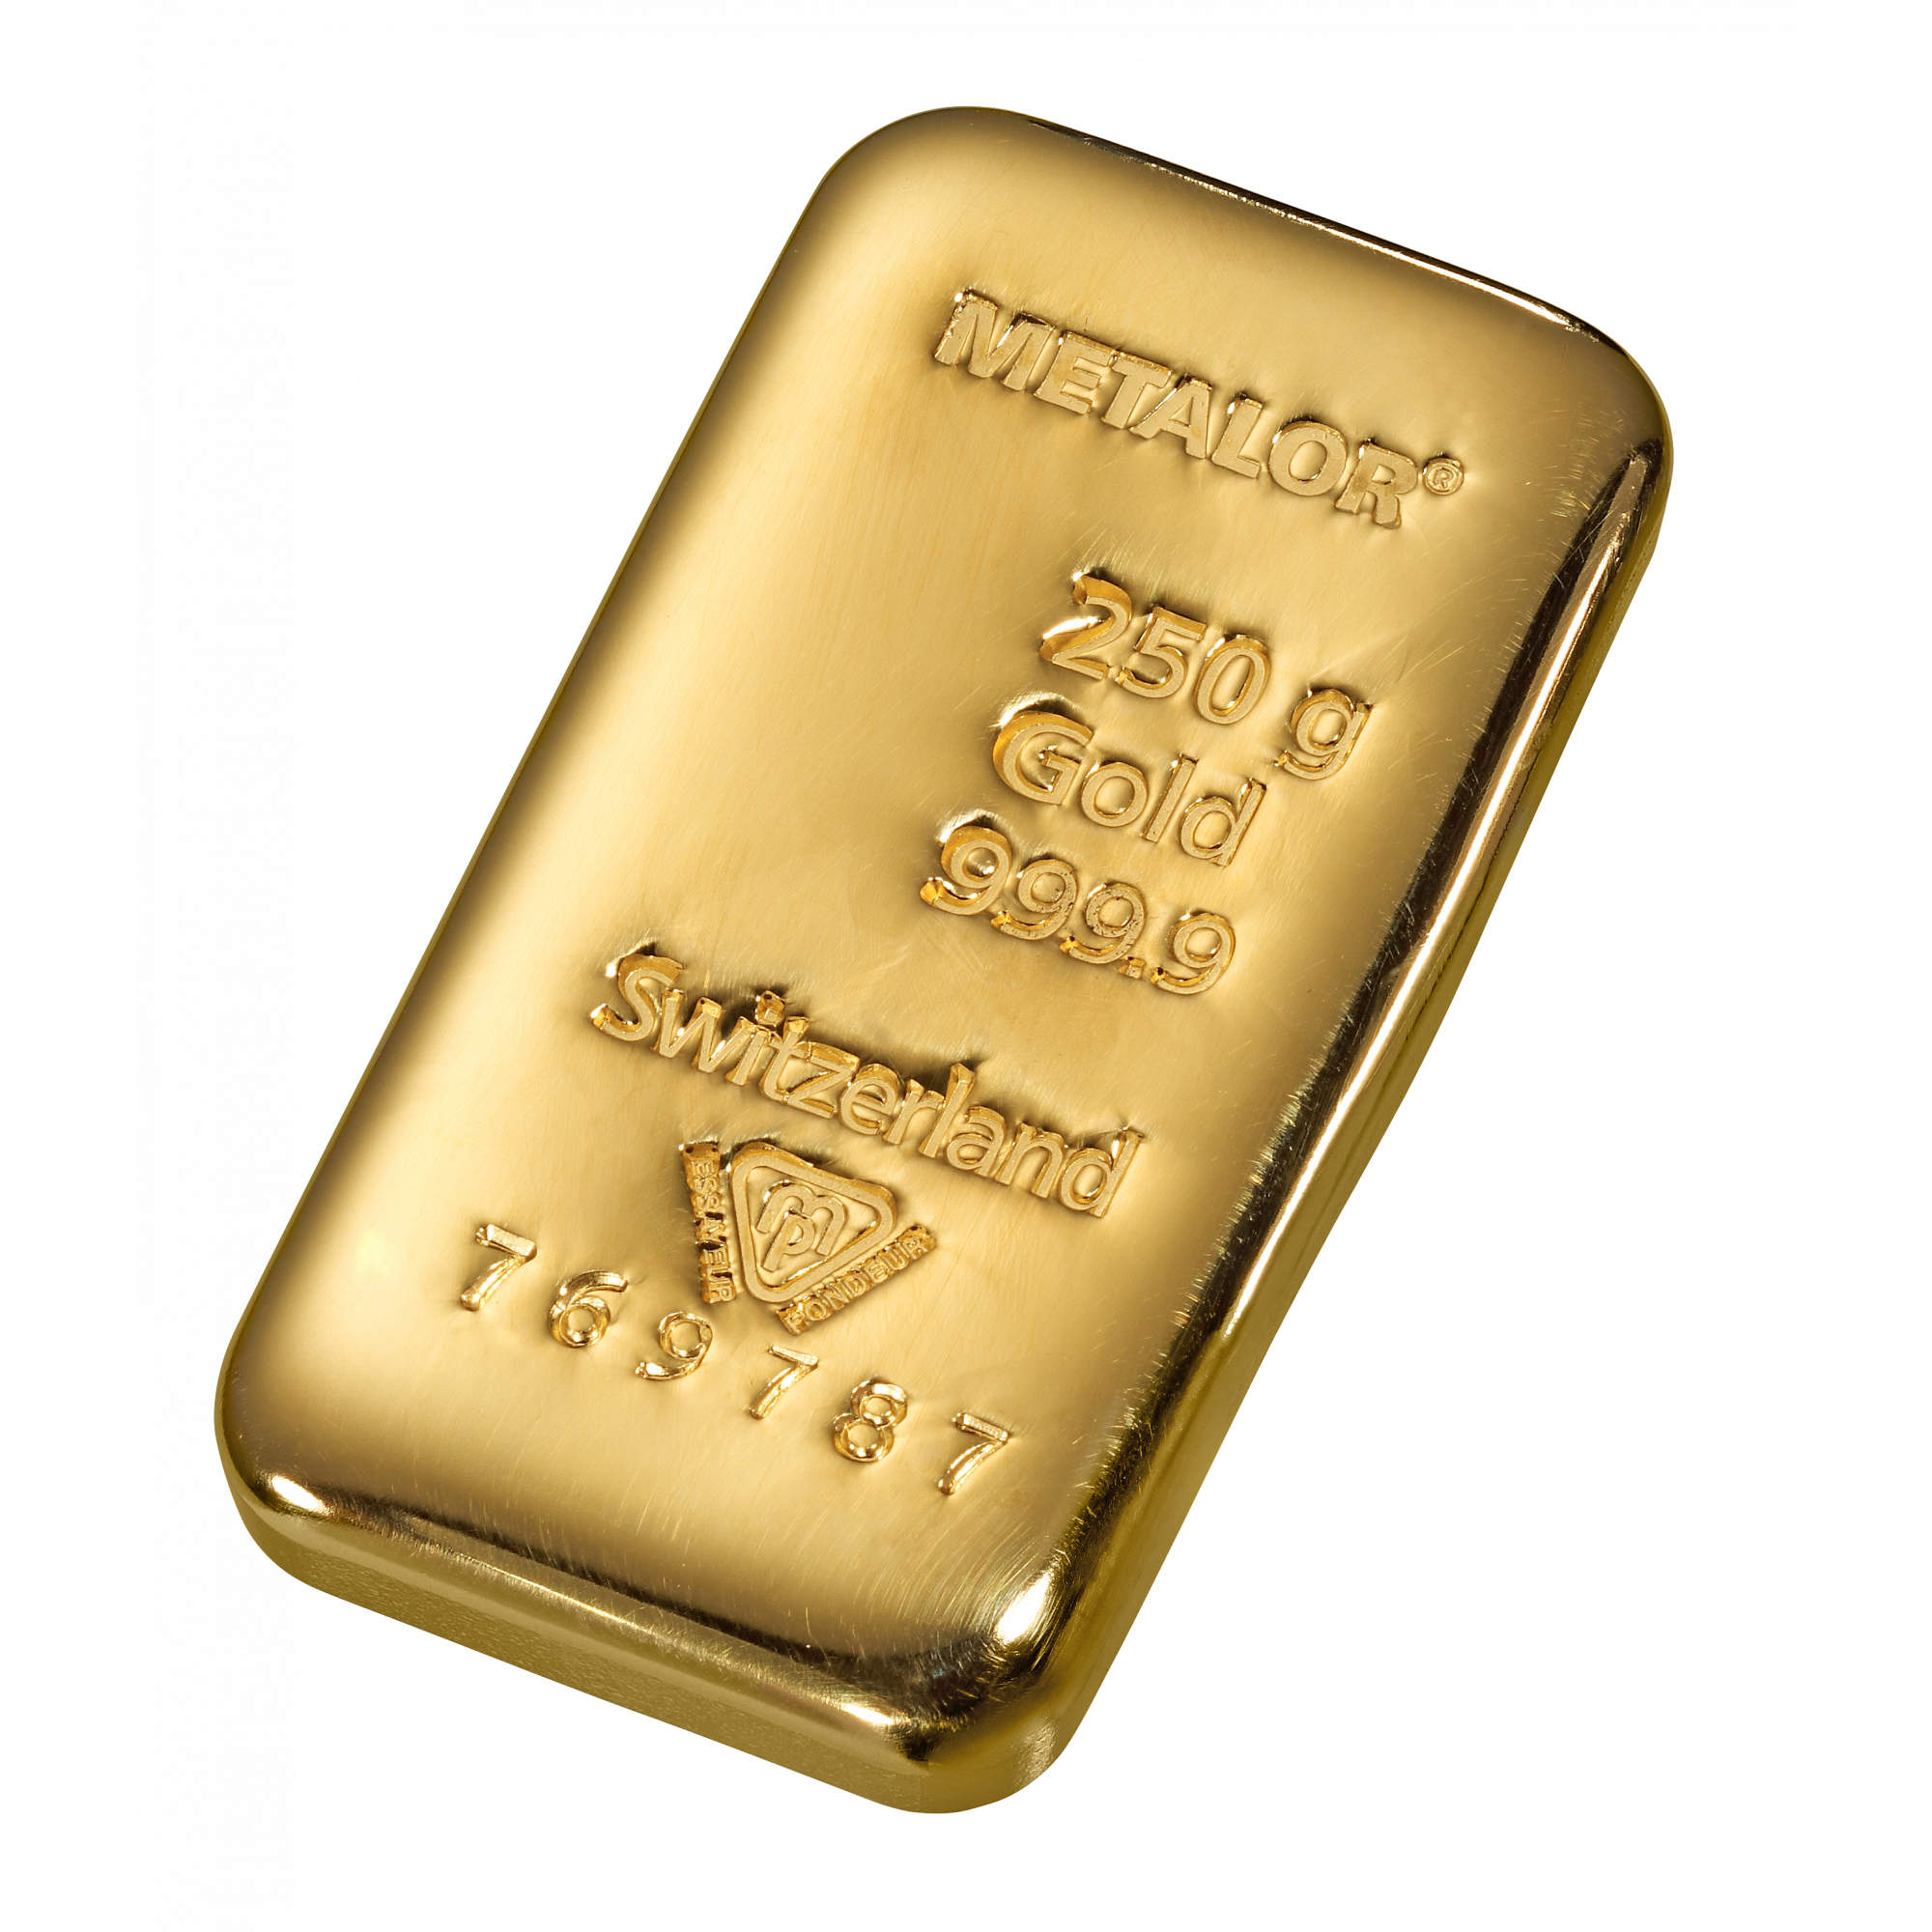 tapijt onderwerpen stel je voor 250 gr. goudbaar - Aankoop en verkoop goudprijs - beleggen in goud